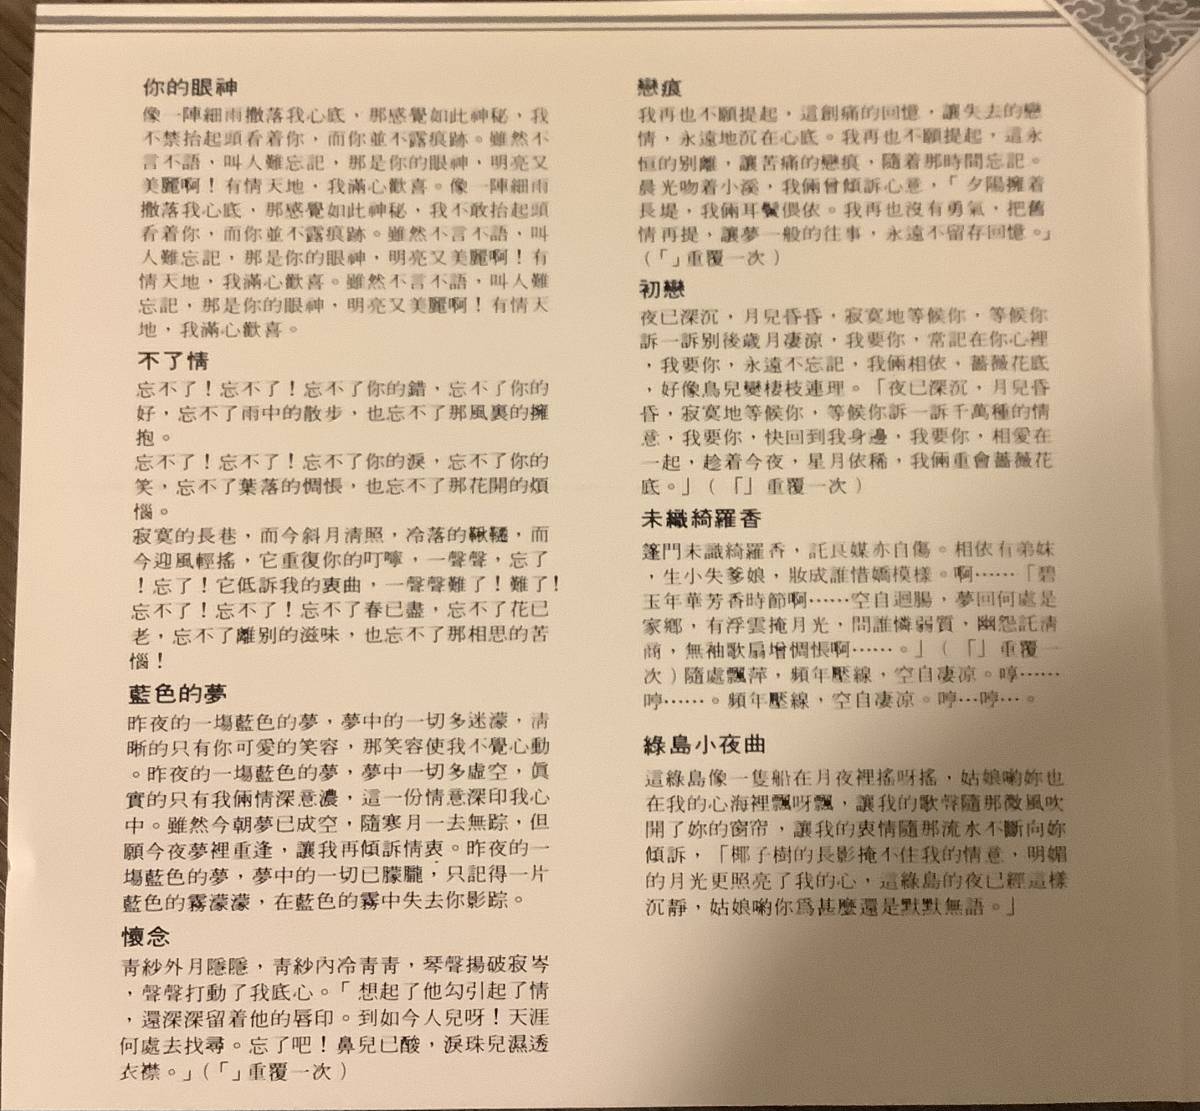 蔡琴【名曲精選】Tsai Chin ツァイ・チン 台湾歌手 中古品—CD Sui Seng 1986年出品 SS 001_画像8